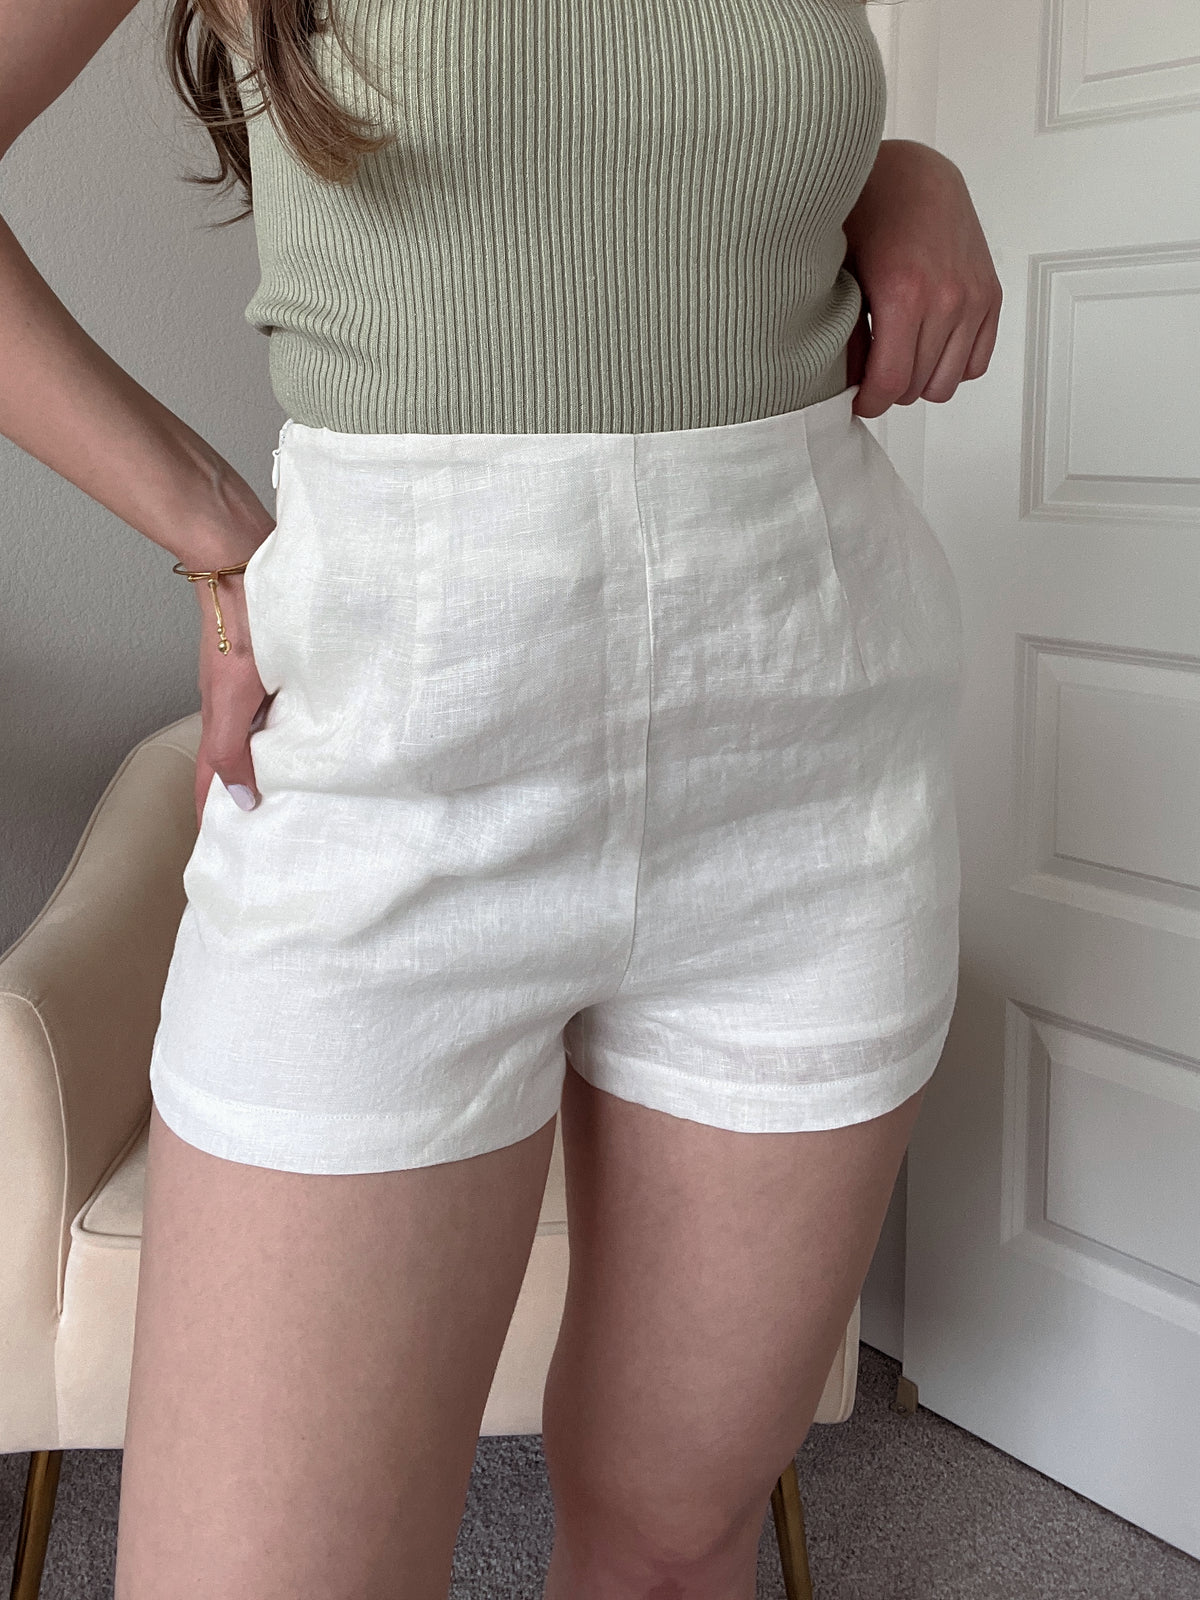 European Summer High Waisted 100% Linen Shorts (Off White)